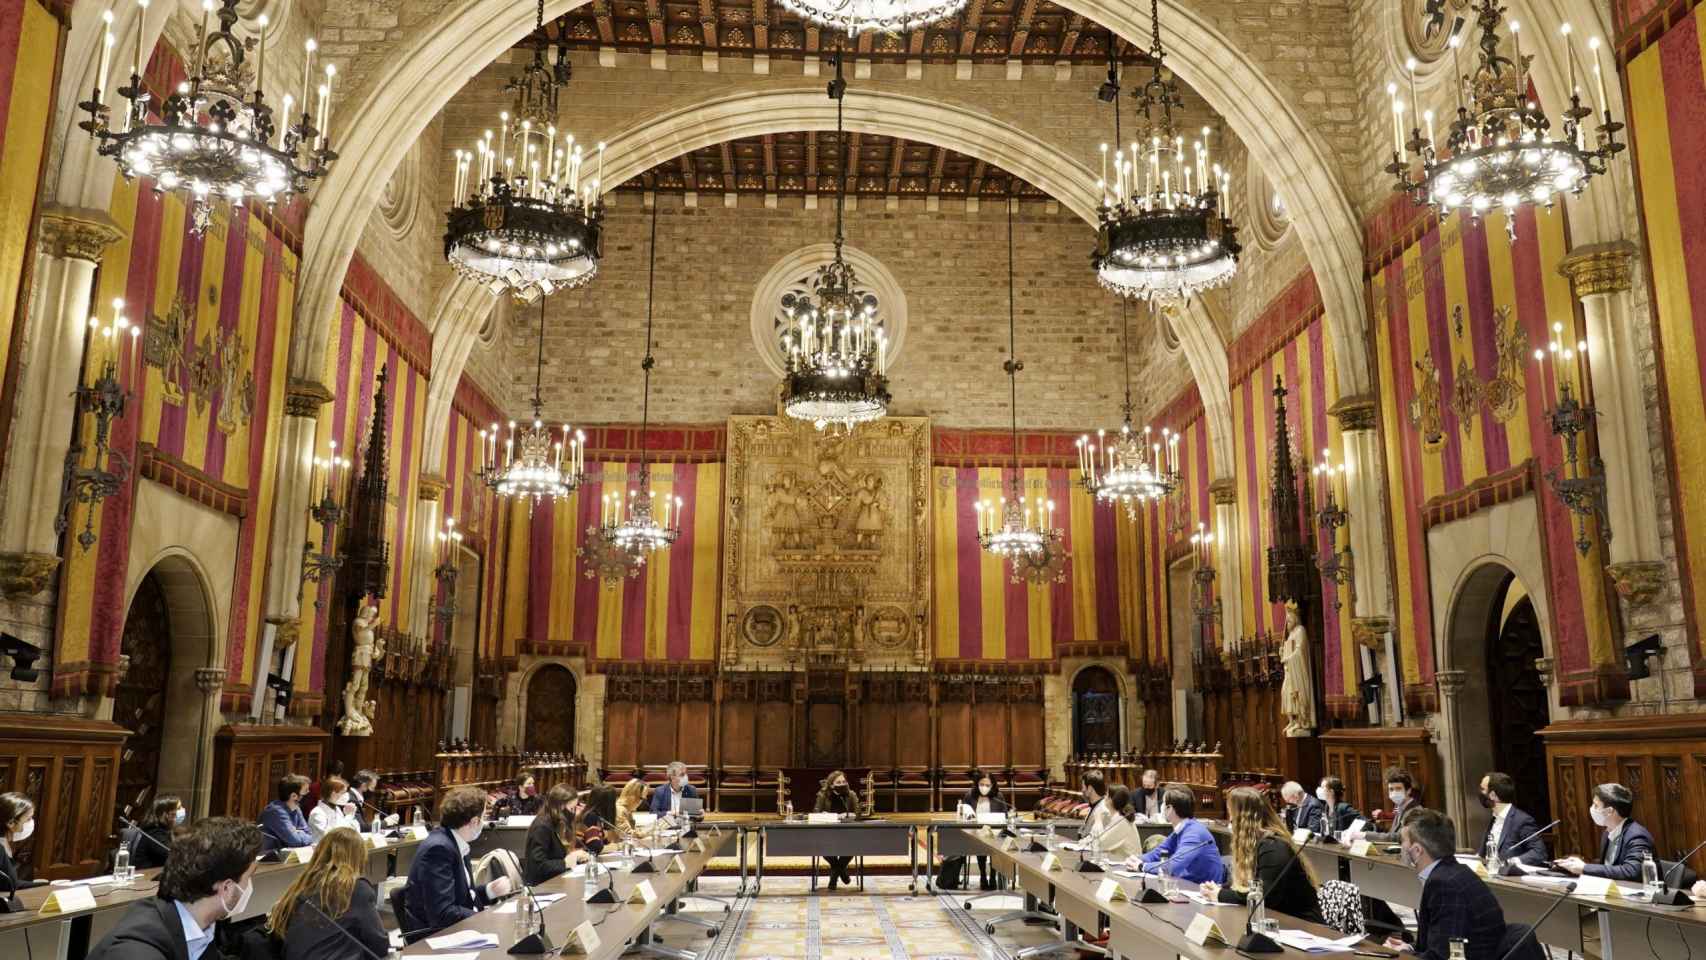 Jóvenes empresarios proponen mejoras para Barcelona a Collboni en el Ayuntamiento / BARCELONA GLOBAL